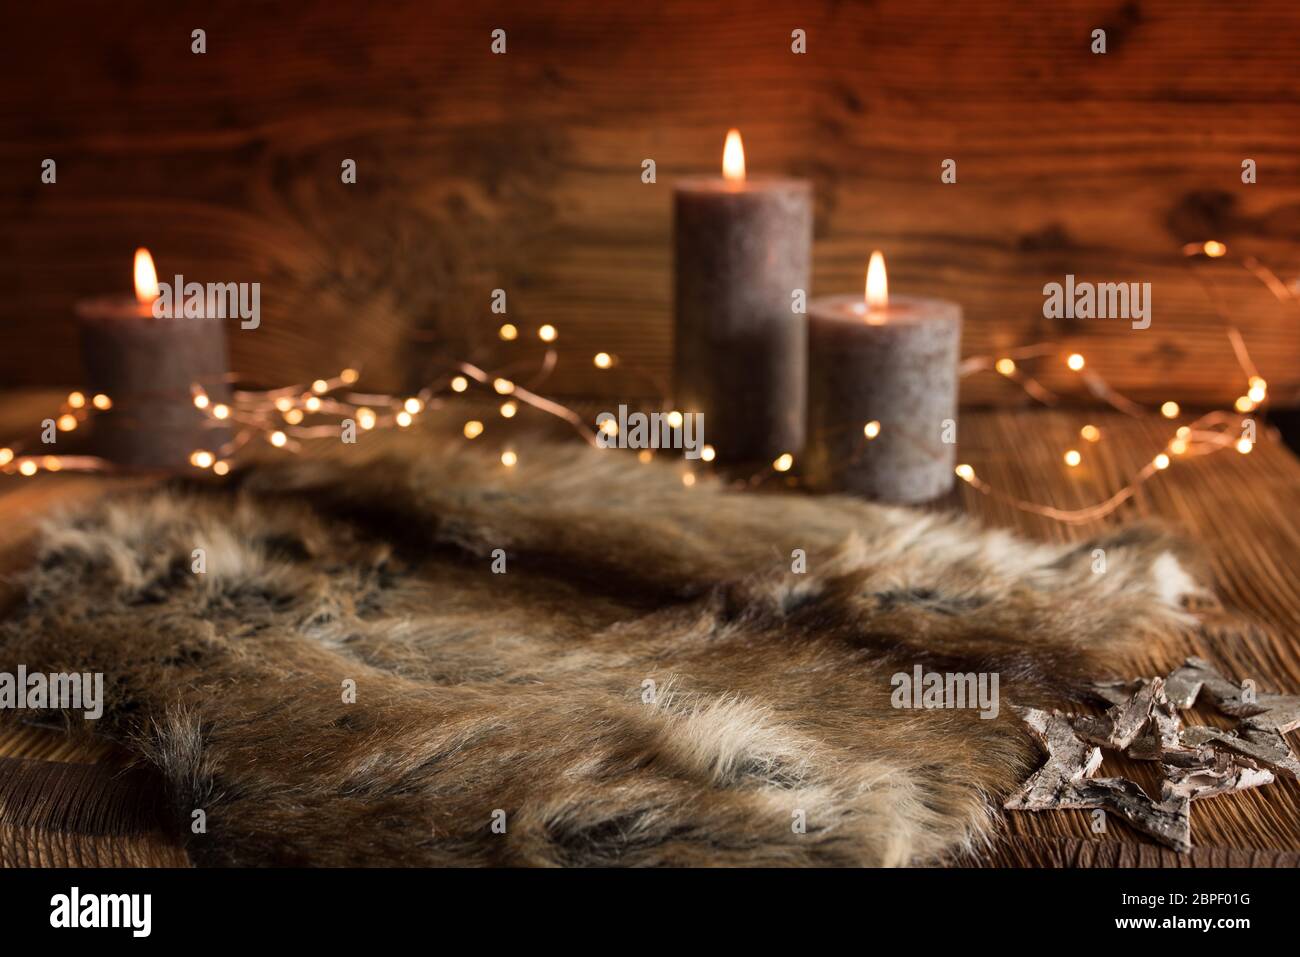 Accogliente decorazione di natale con candele e pelliccia in una serata invernale con breve profondità di campo Foto Stock